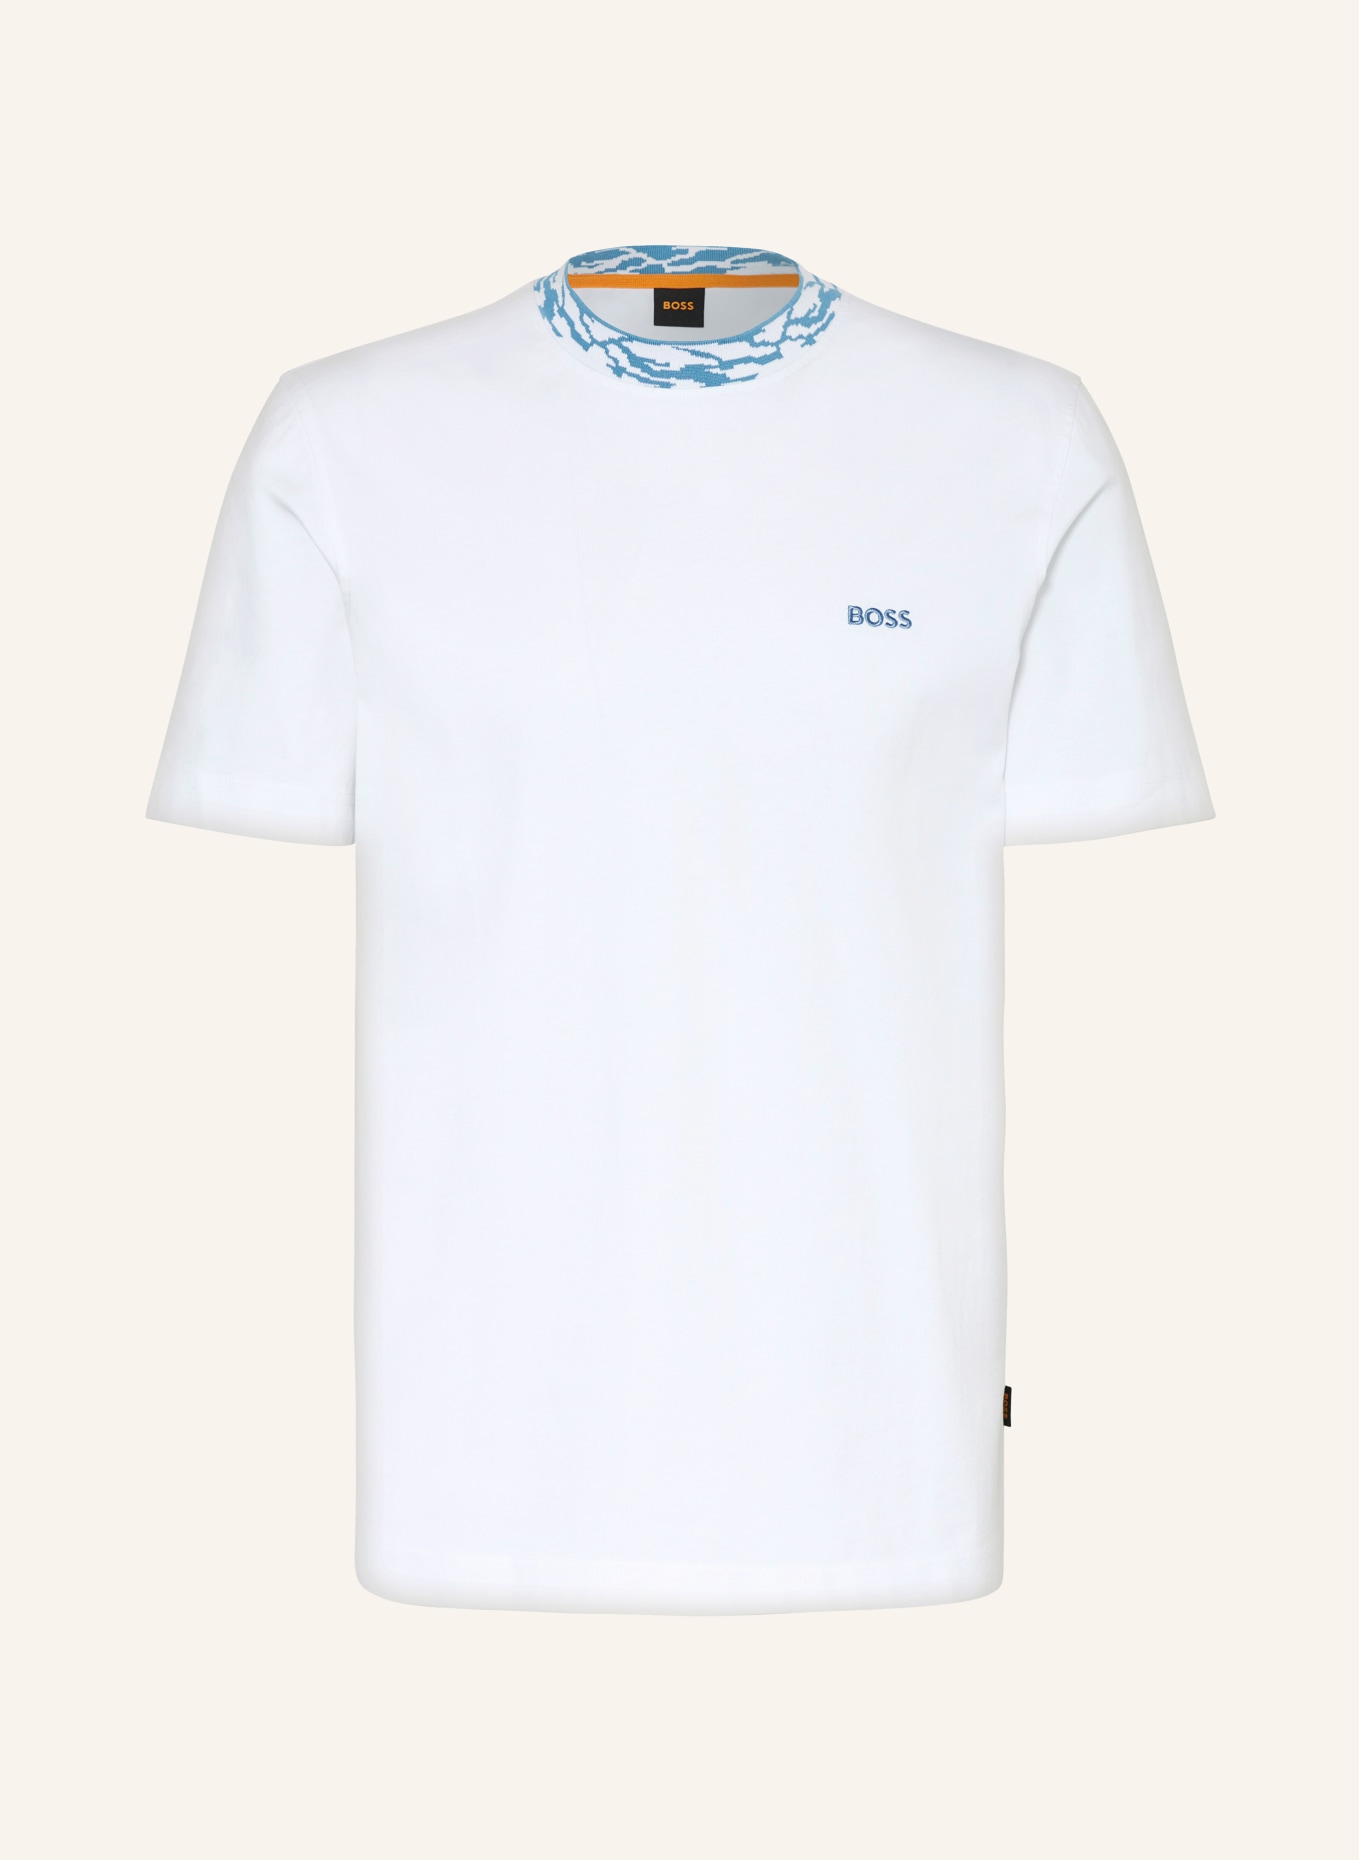 BOSS T-Shirt OCEAN, Farbe: WEISS (Bild 1)